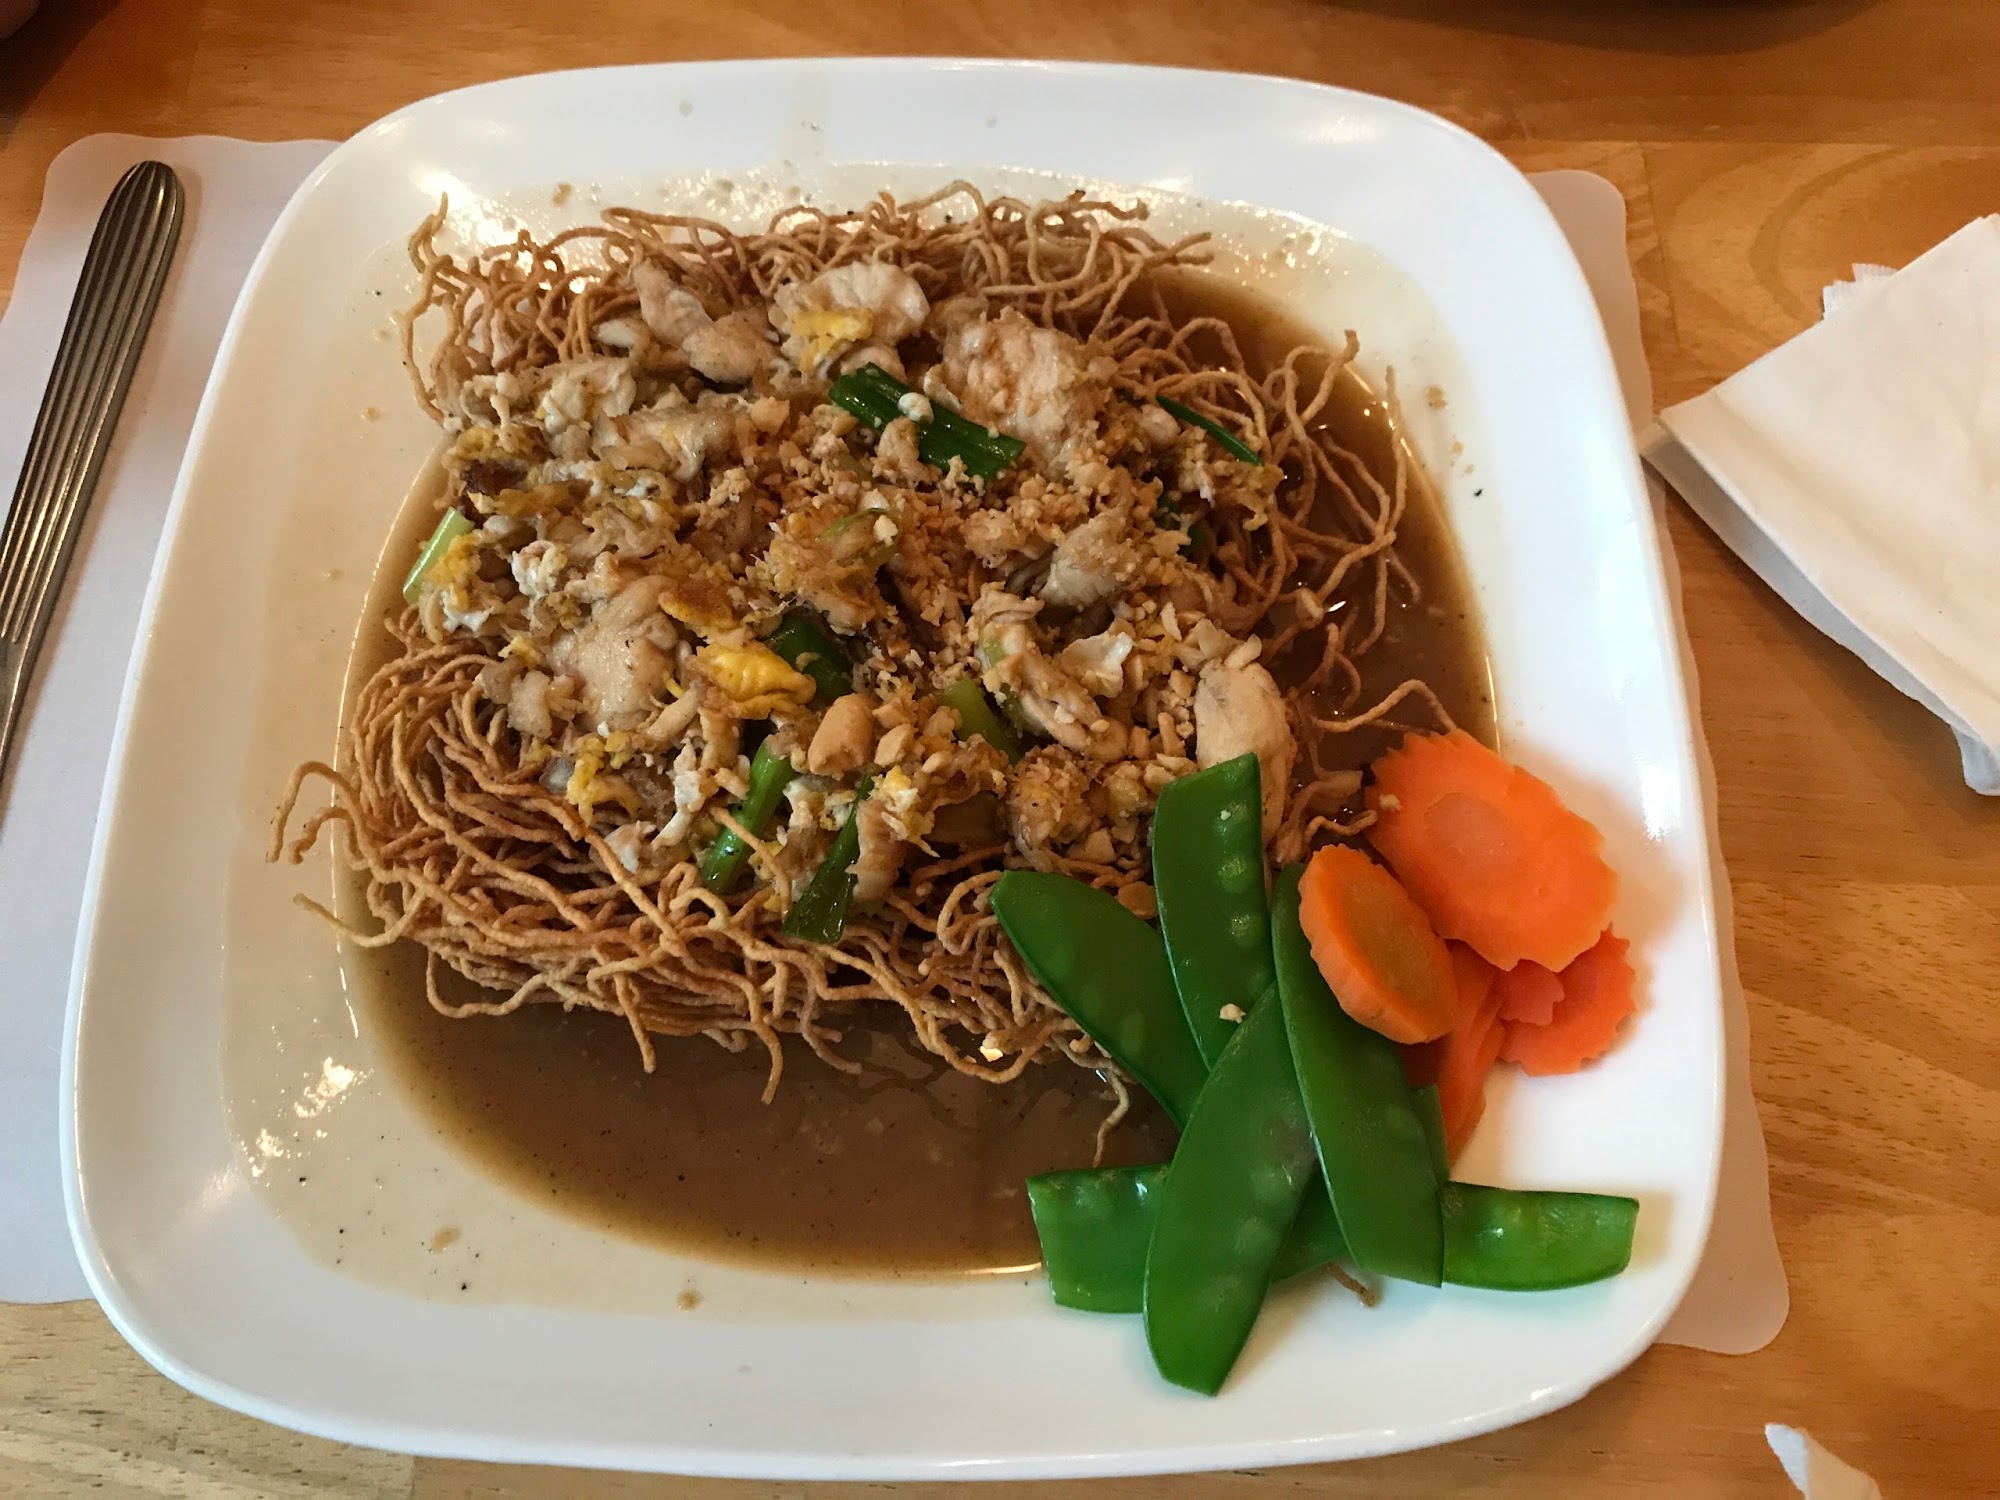 Cilantro Thai Cuisine